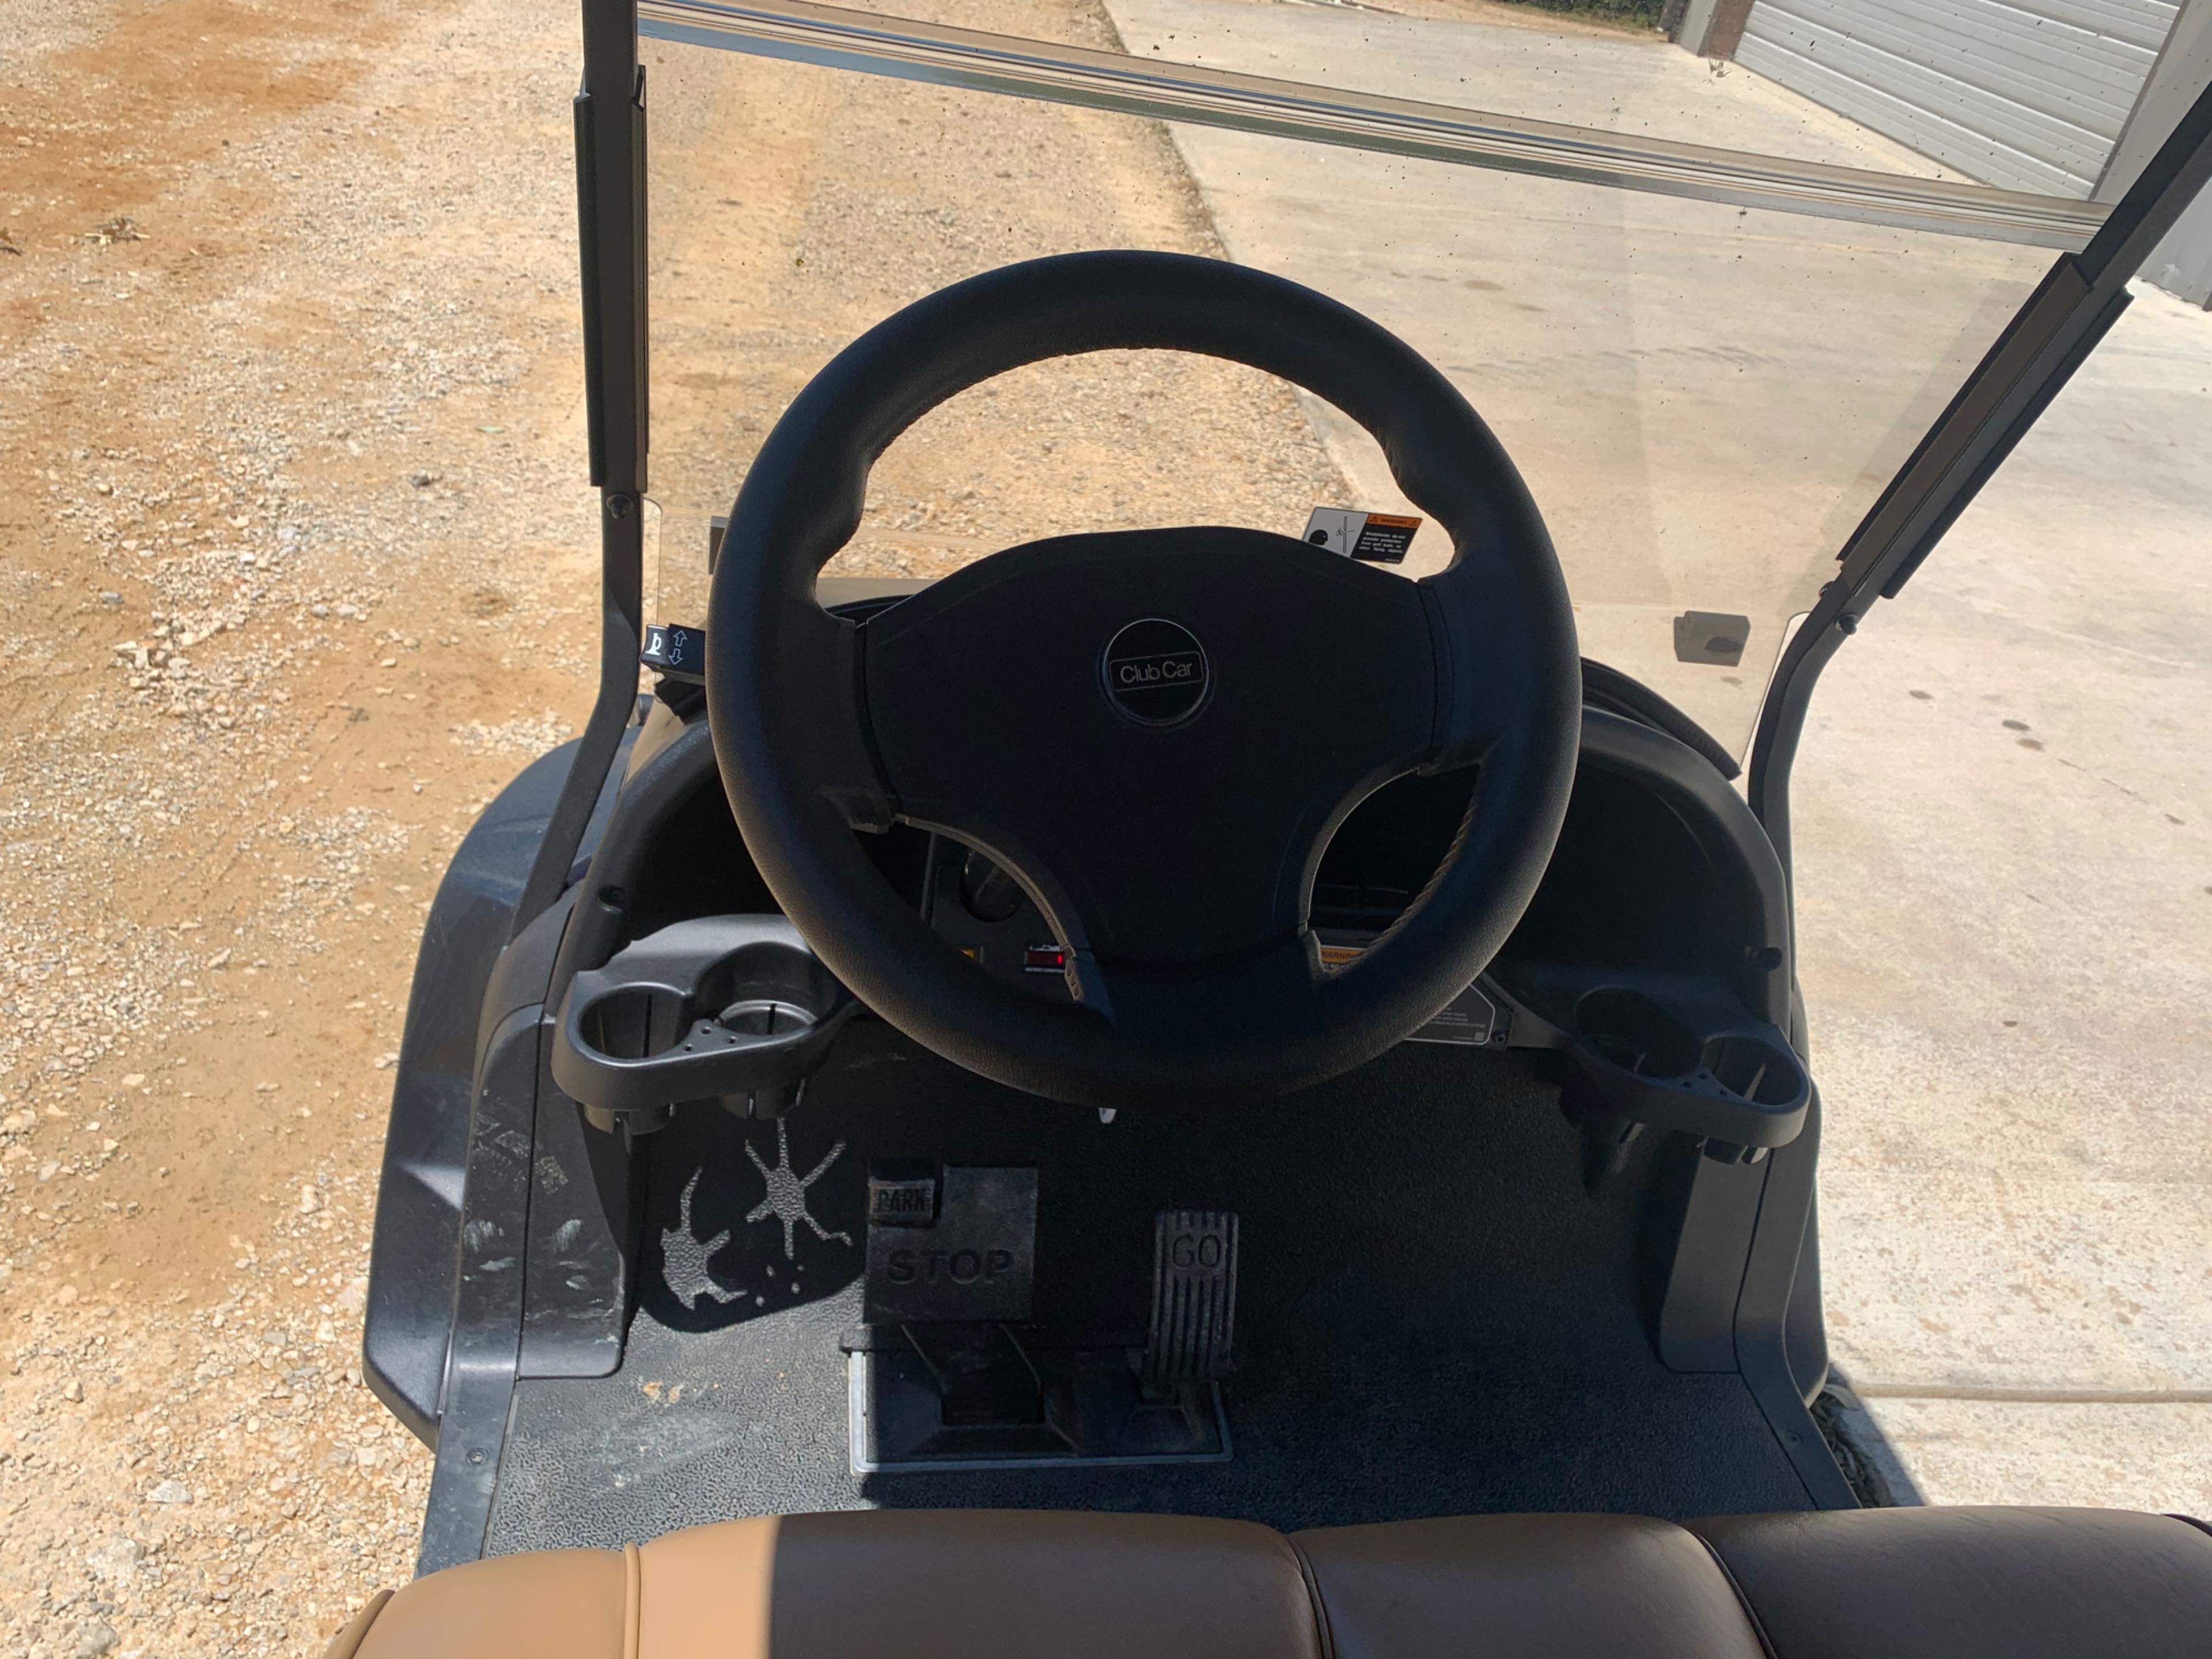 2020 Club Car Onward Electric Golf Cart